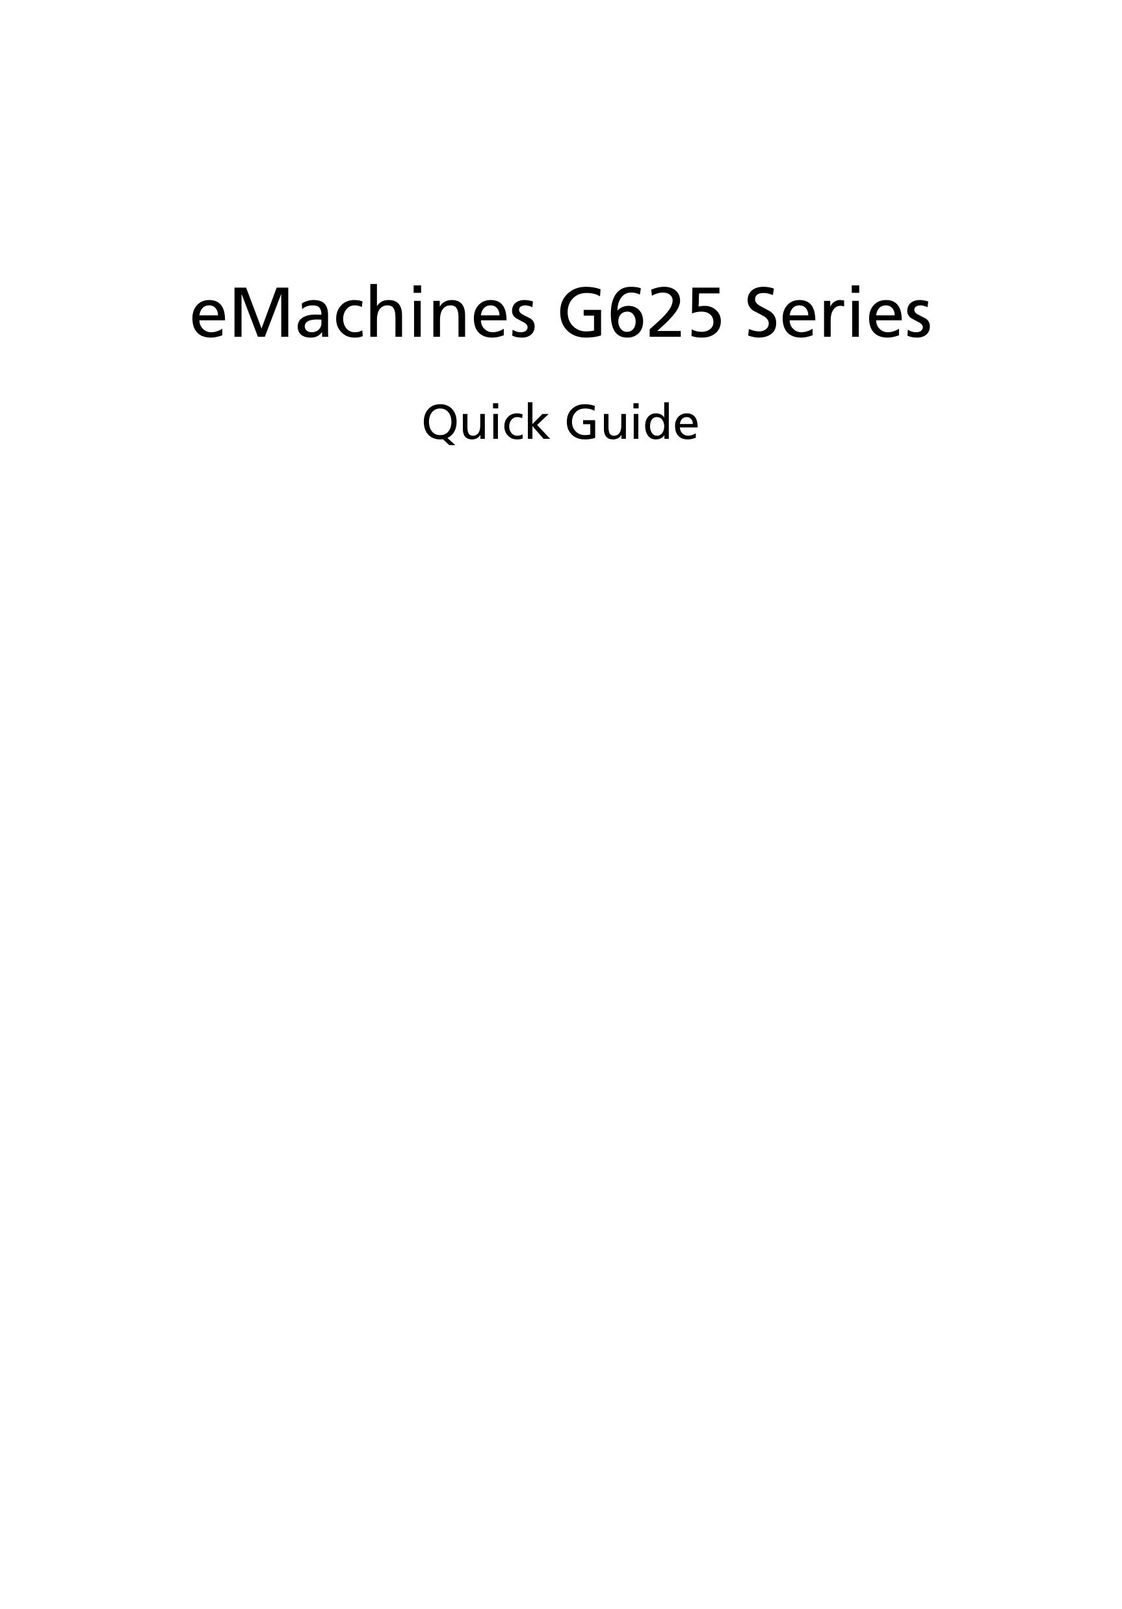 eMachines G625 Series Laptop User Manual